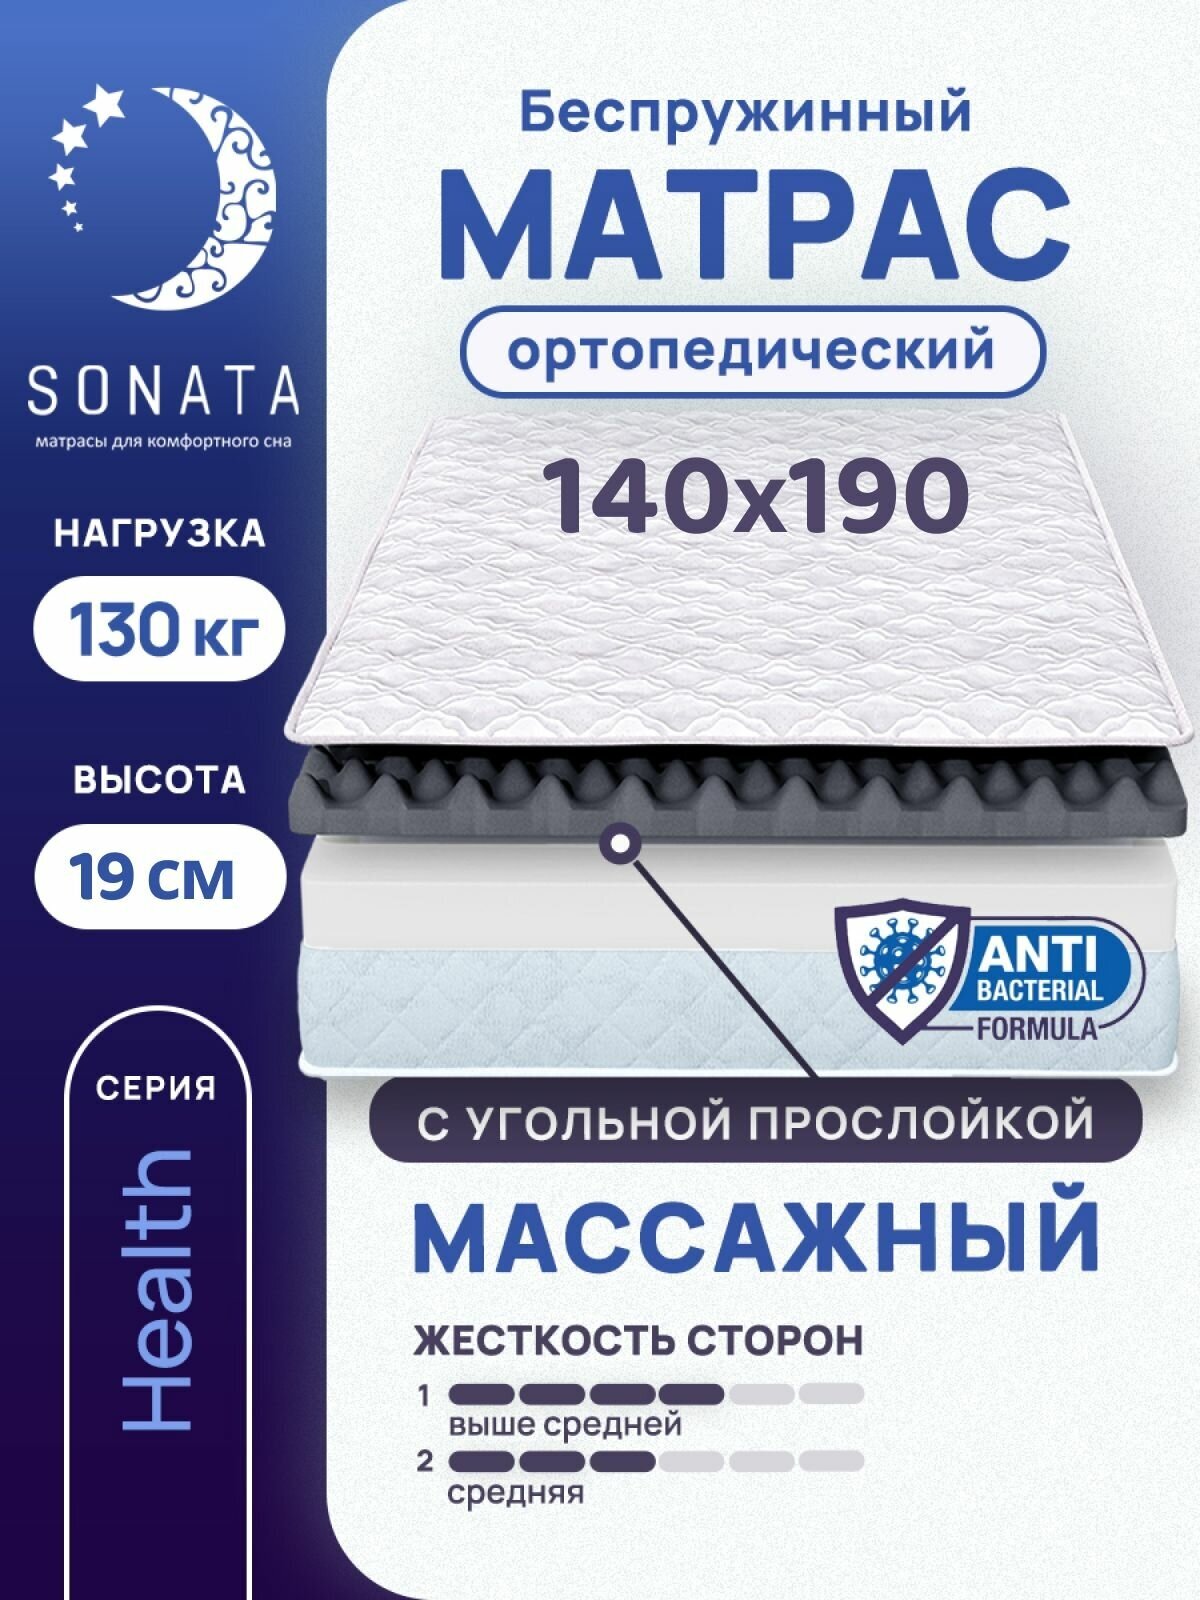 Матрас 140х190 см SONATA, ортопедический, беспружинный, двуспальный, матрац для кровати, высота 19 см, с массажным эффектом